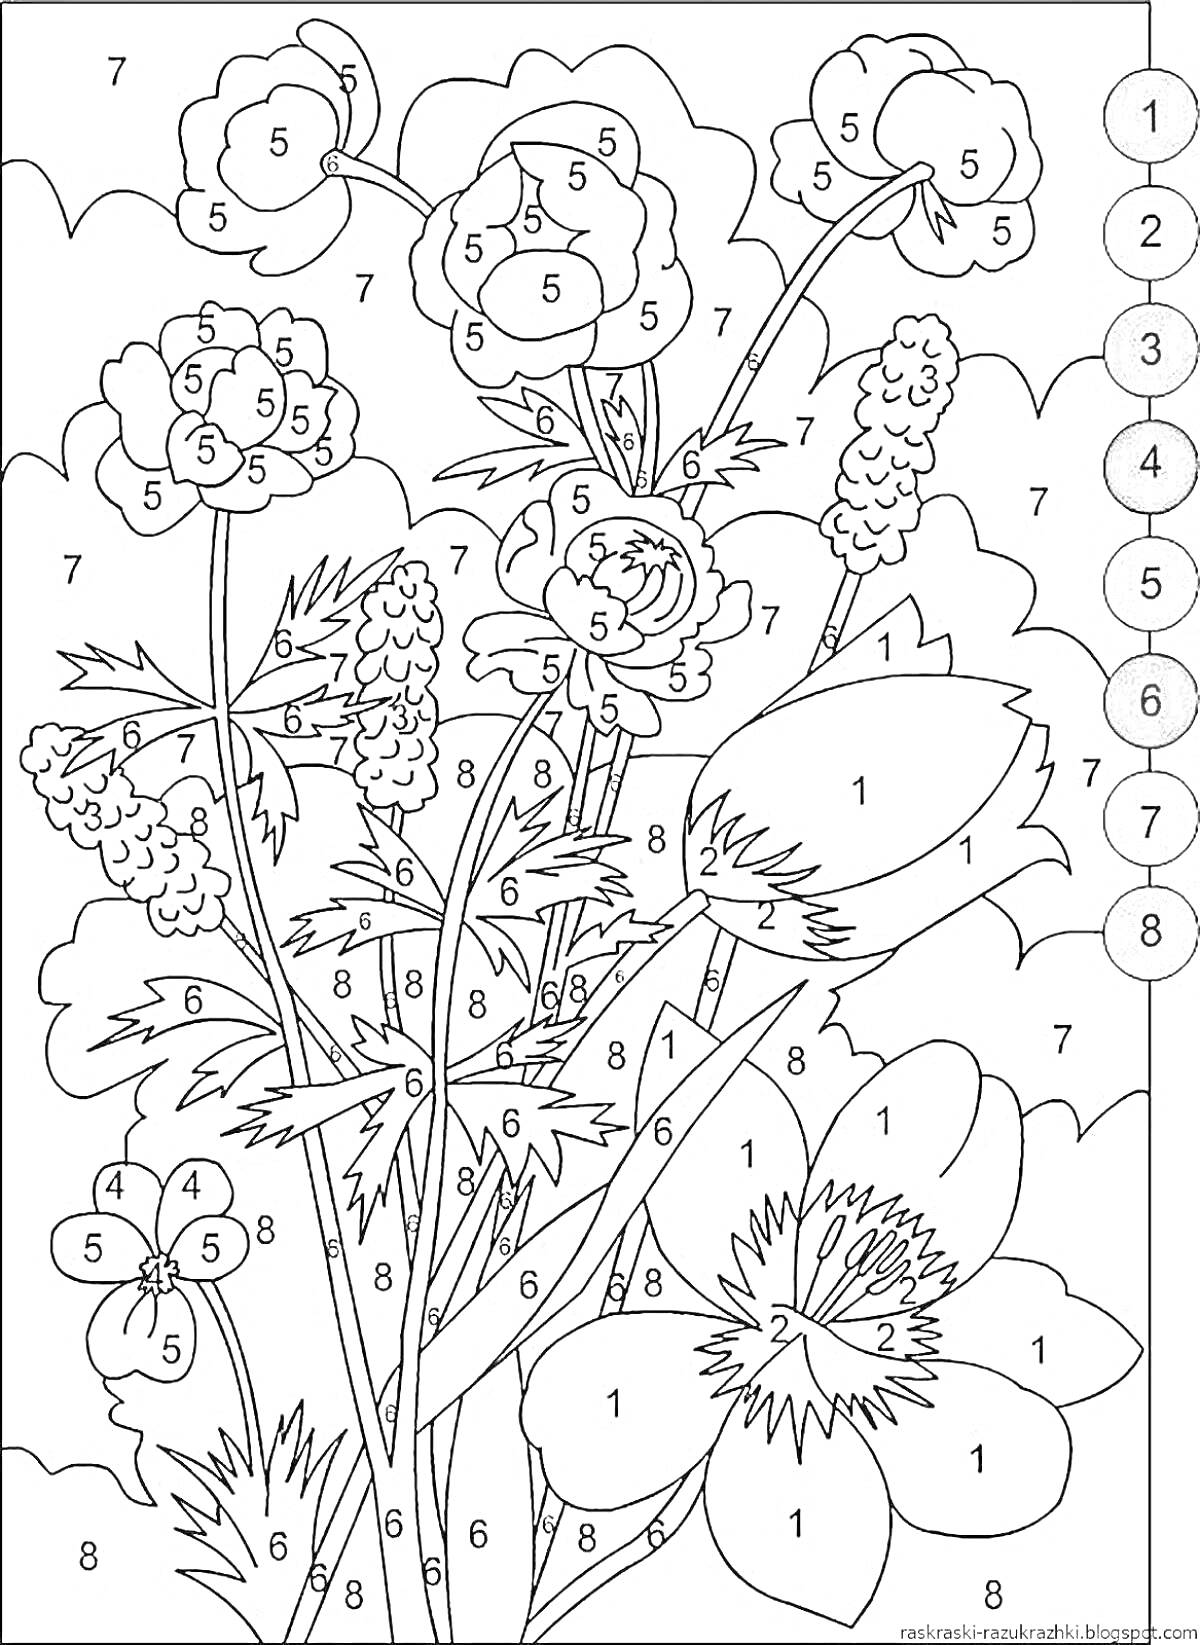 Раскраска по номерам с букетом полевых цветов